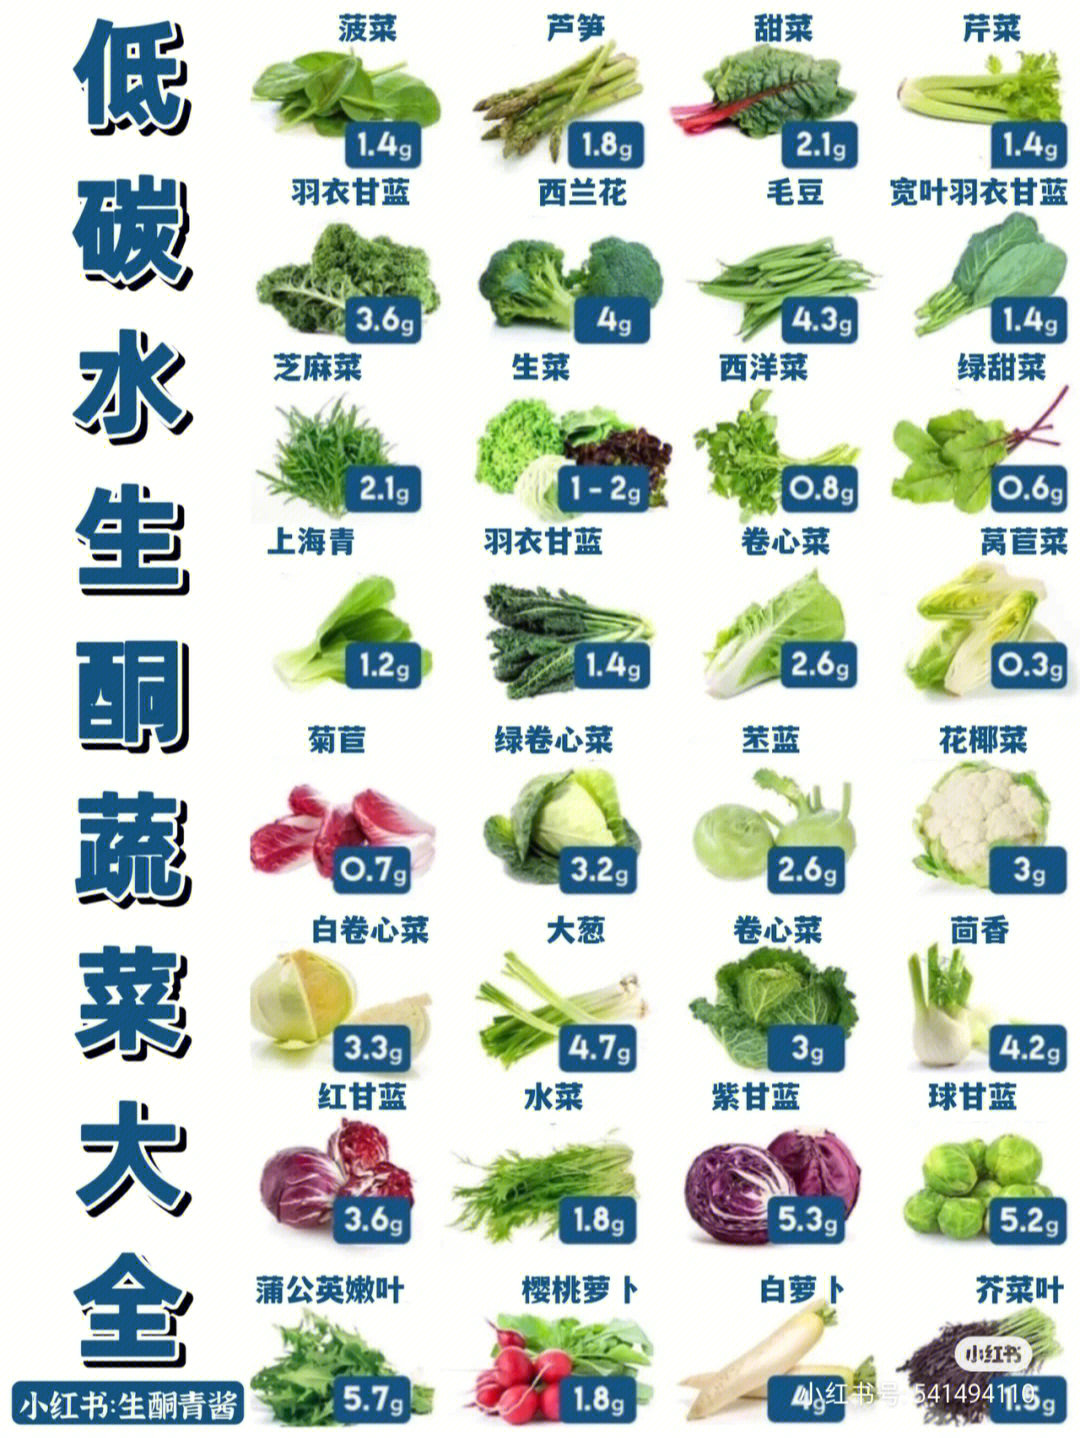 青菜的种类 品种图片